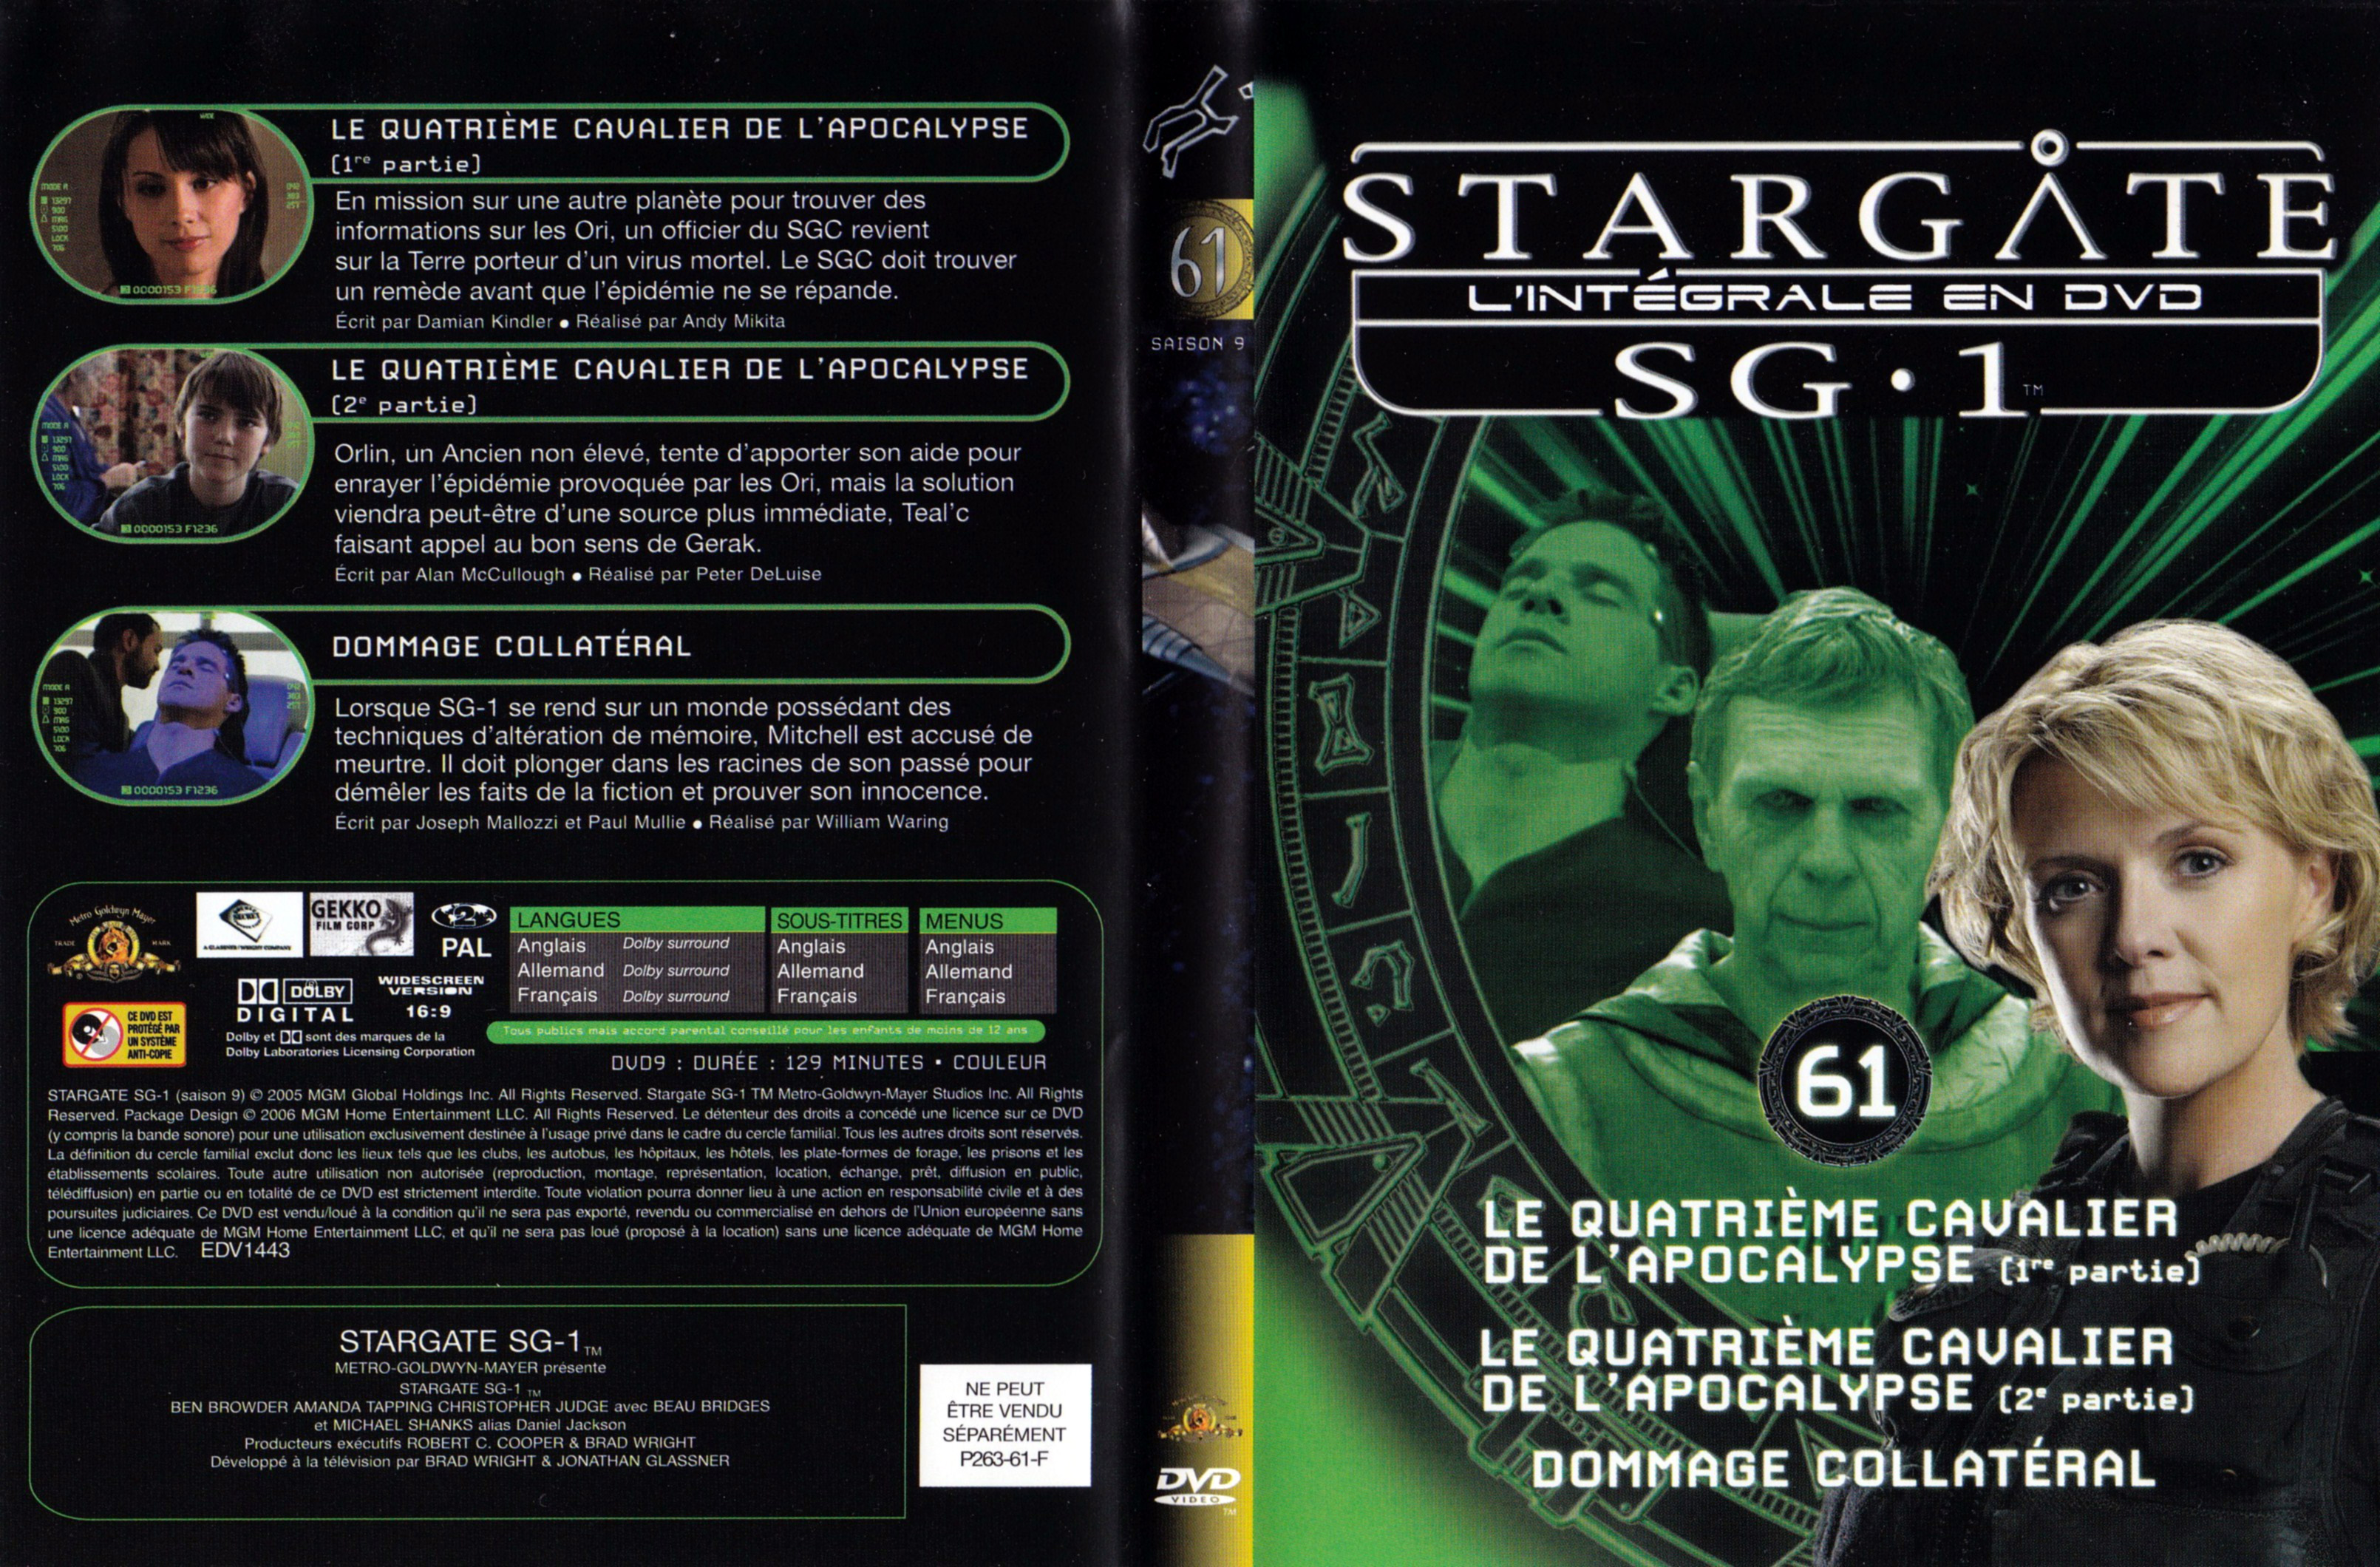 Jaquette DVD Stargate SG1 Intgrale Saison 9 vol 61